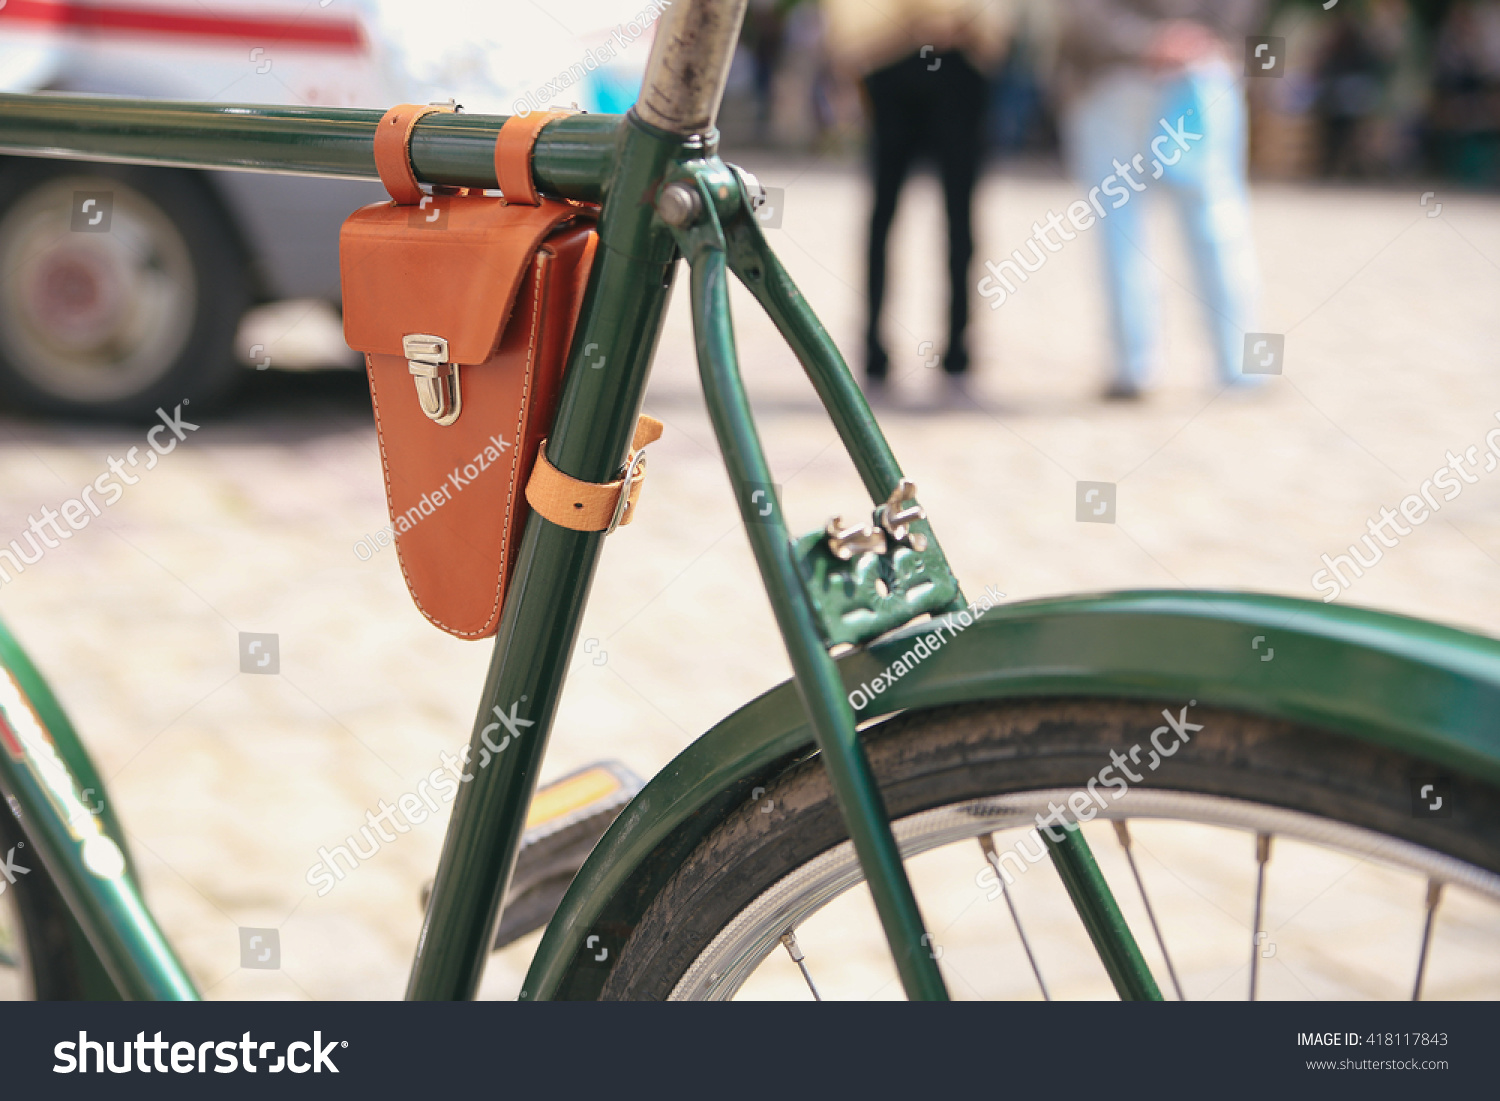 vintage bicycle bags